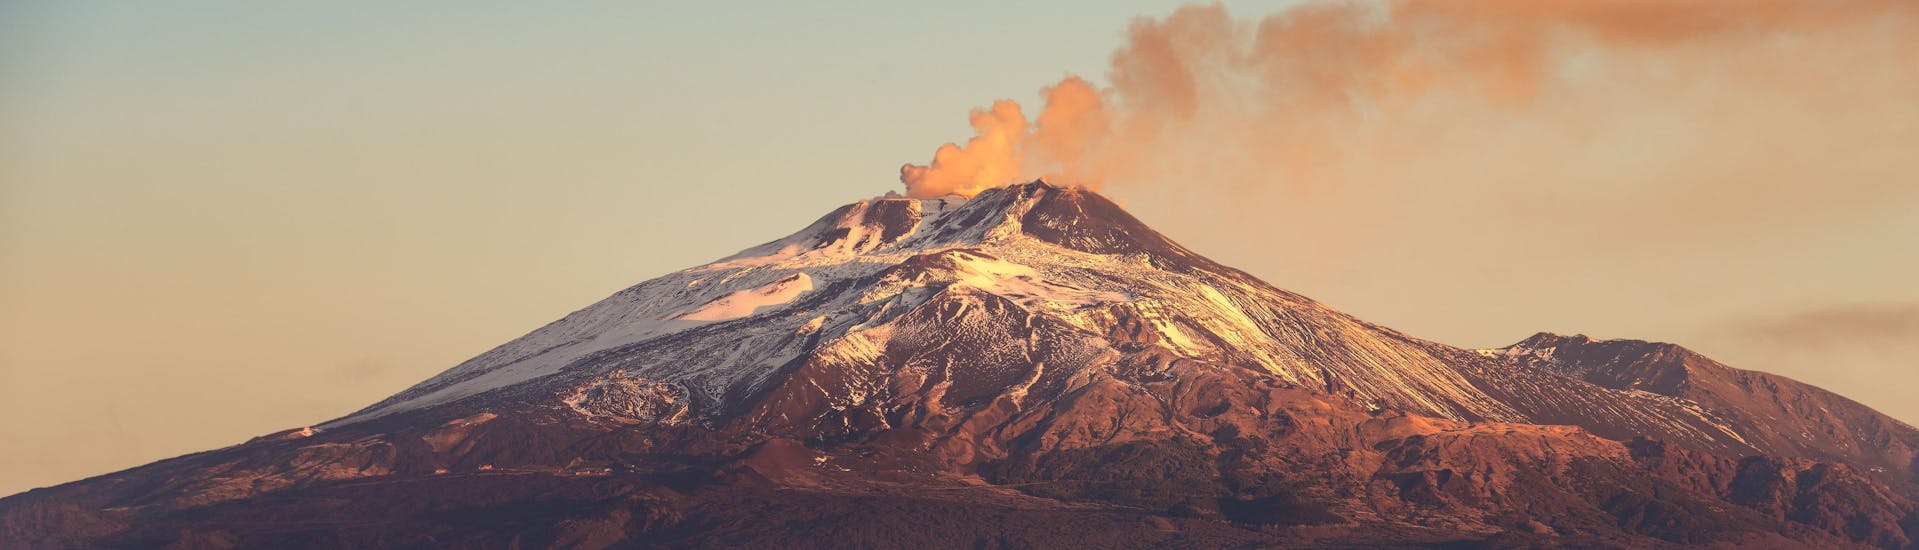 Uitzicht op de Etna, die een populaire bestemming is voor vulkaanreizen en wandeltochten.